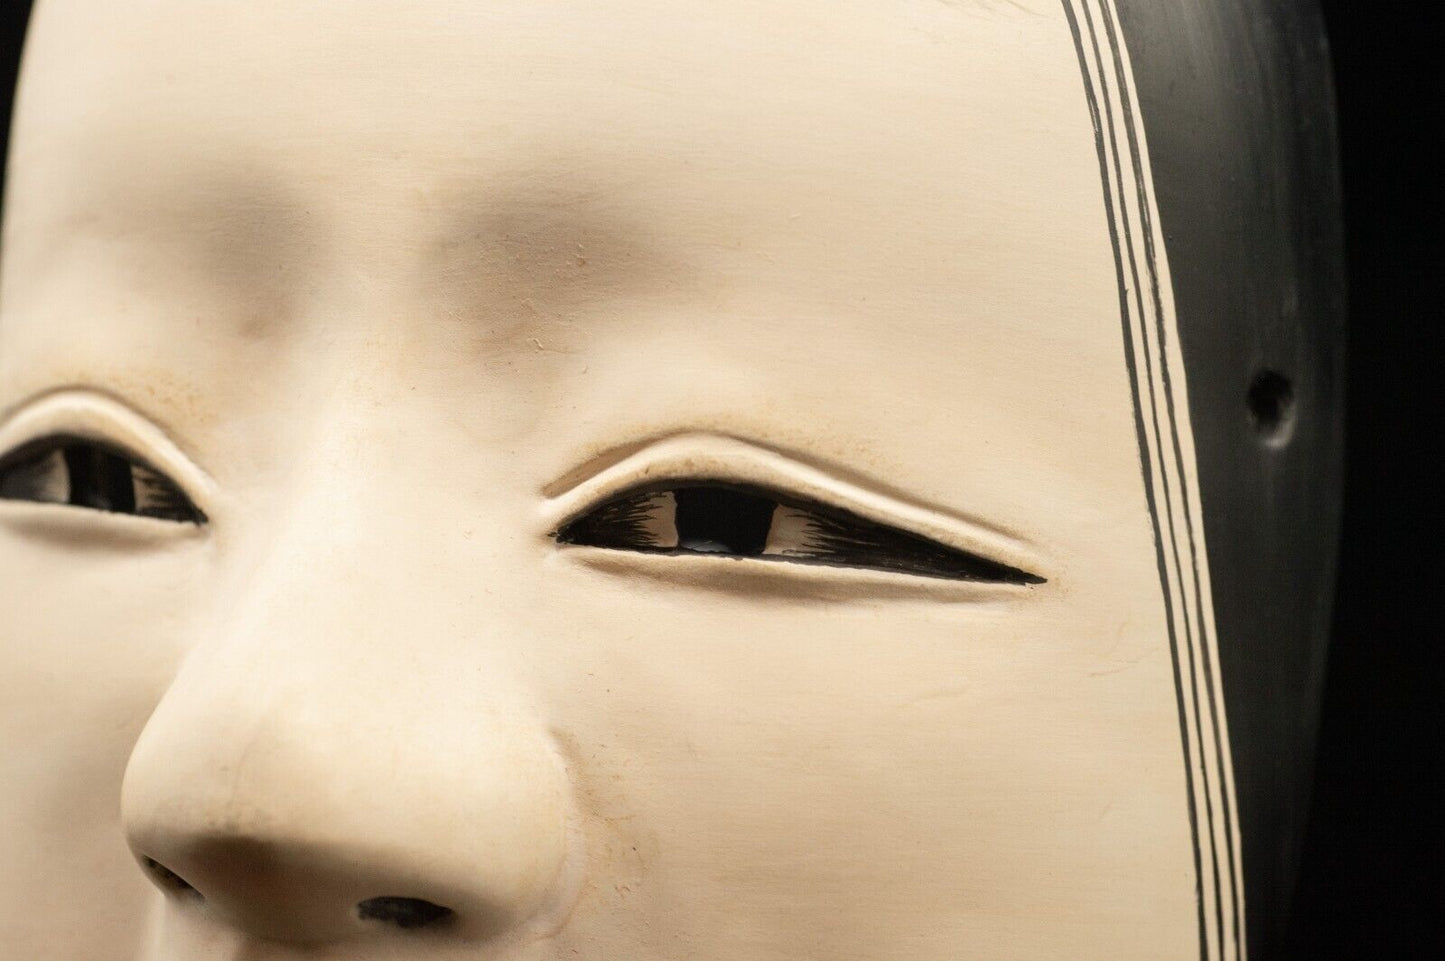 HQ Signed Wooden Noh Mask Koomote Seiun 小面 Made Noh Men Japanese Vintage